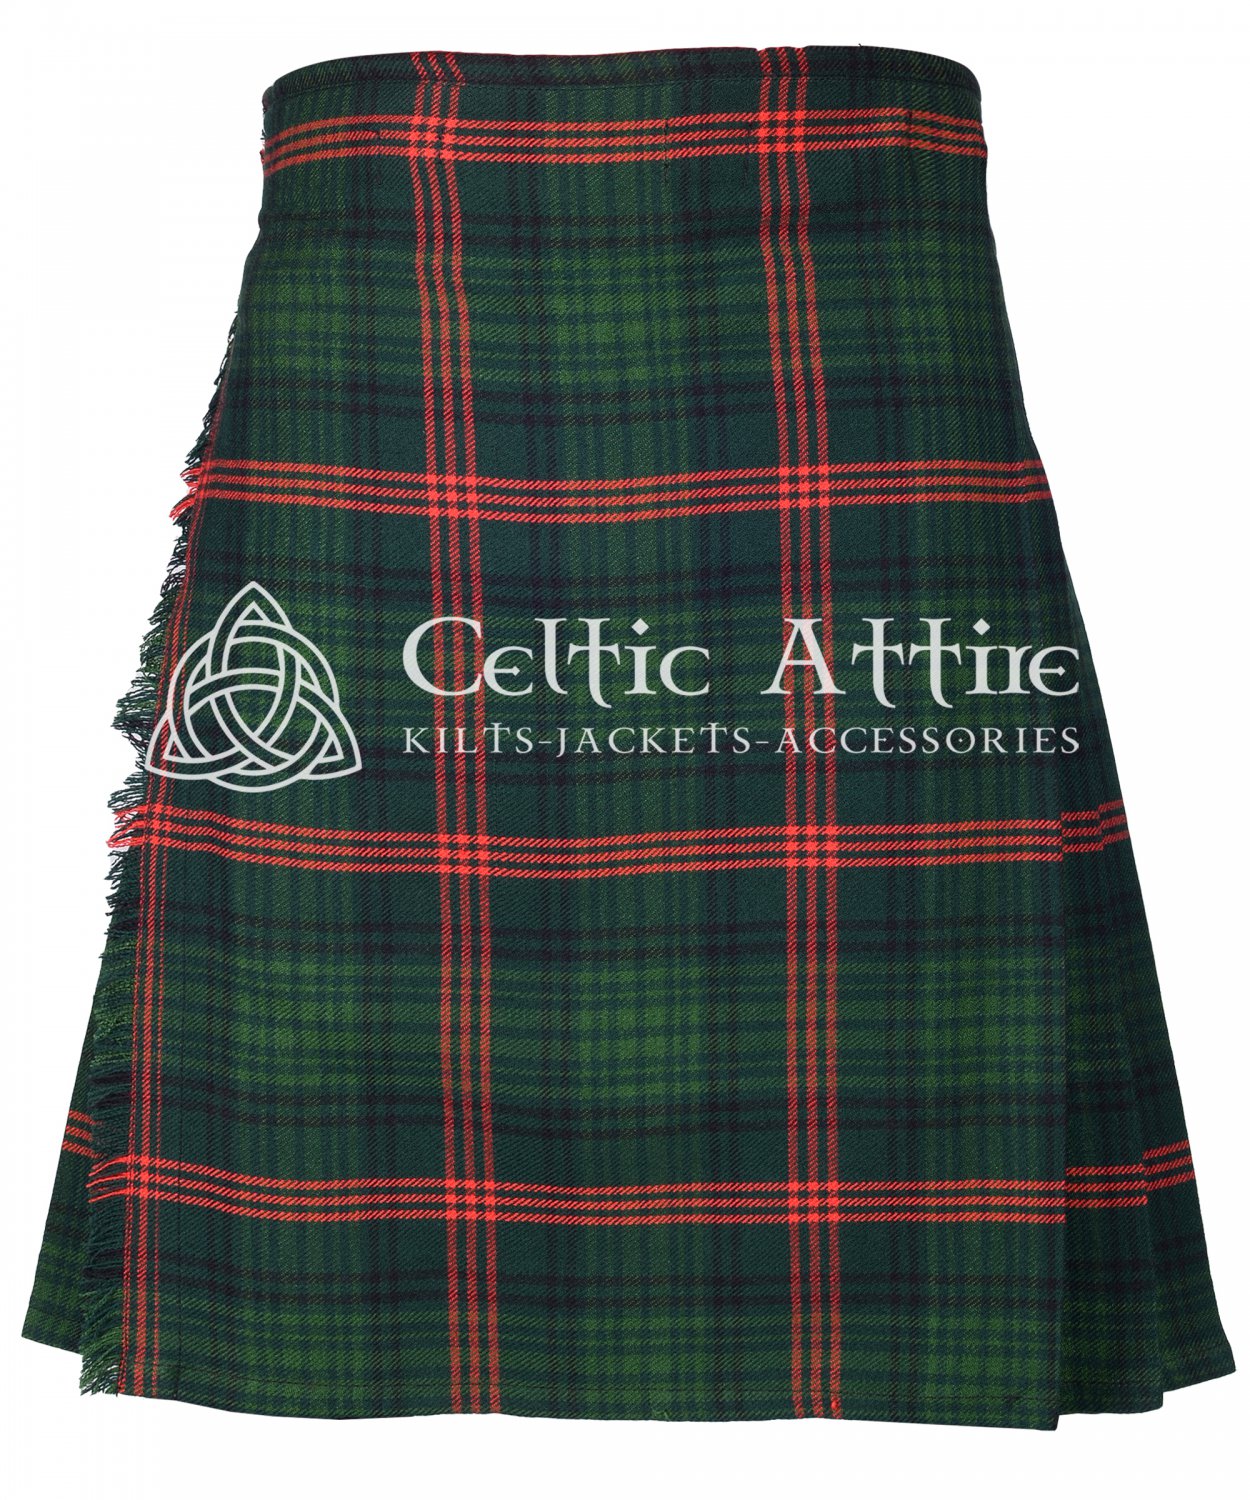 ROSS HUNTING tartan 8 Yard KILT - Scottish Traditional 16 Oz tartan 8 Yard Kilts for men